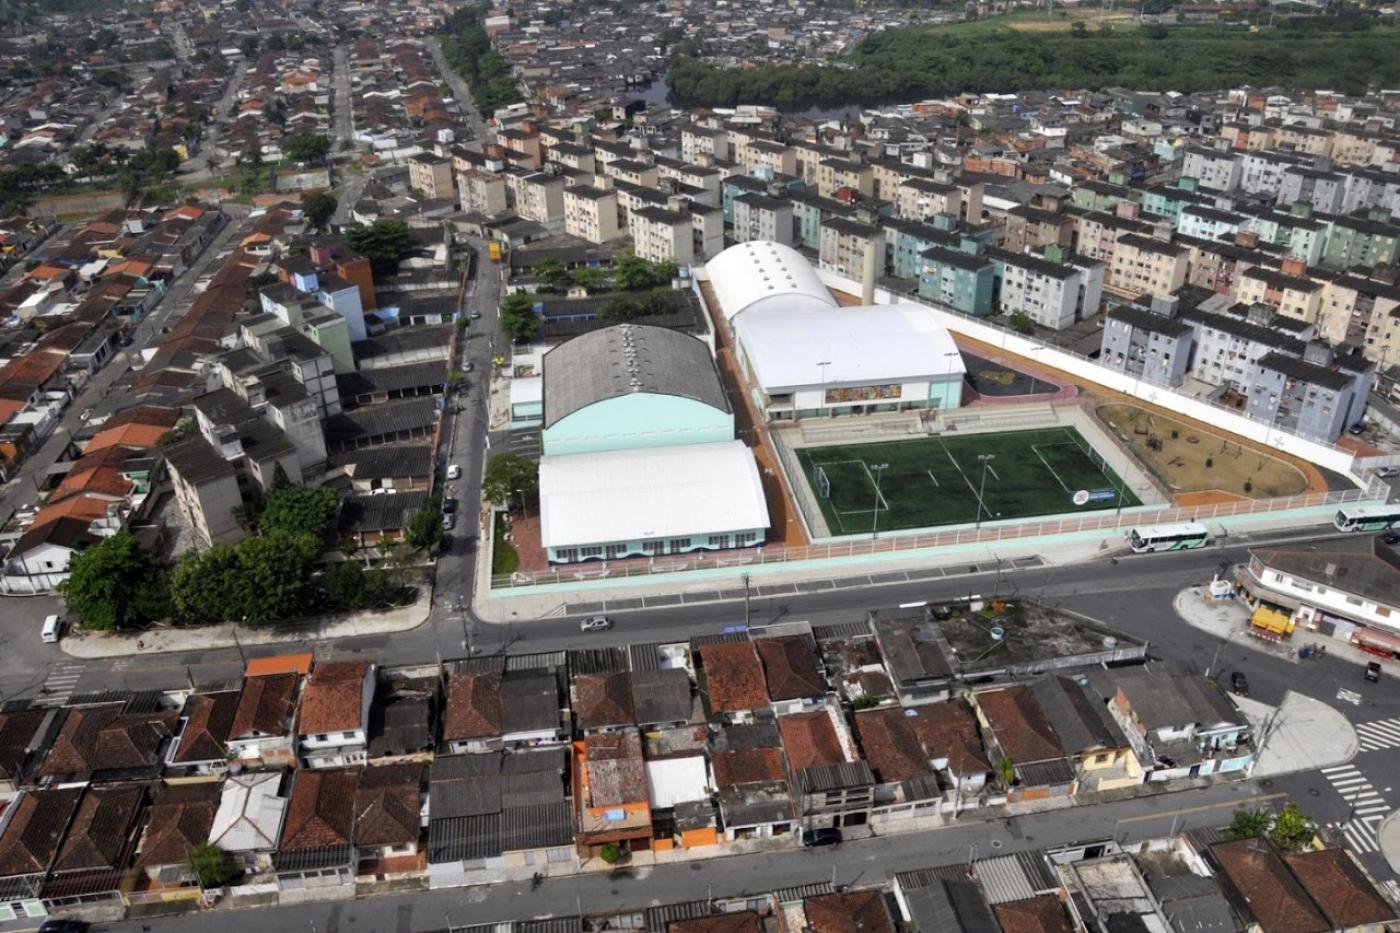 Vista aérea do bairro Castelo, com o centro Esportivo da Zona Noroeste em destaque. #paratodosverem